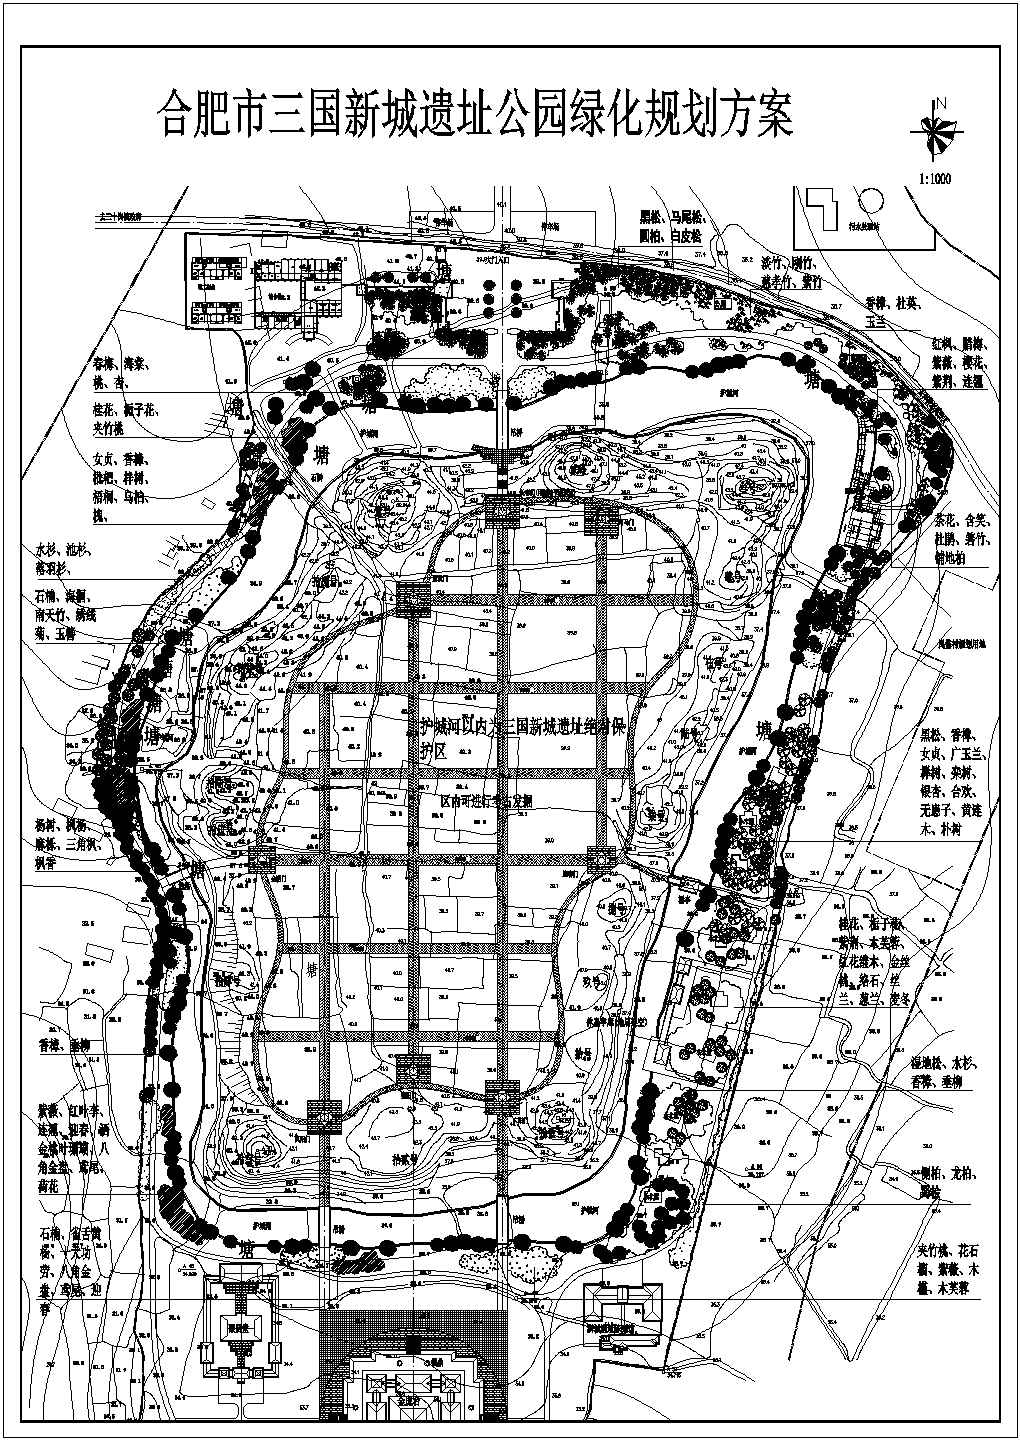 三国新城遗址公园绿化规划方案CAD图